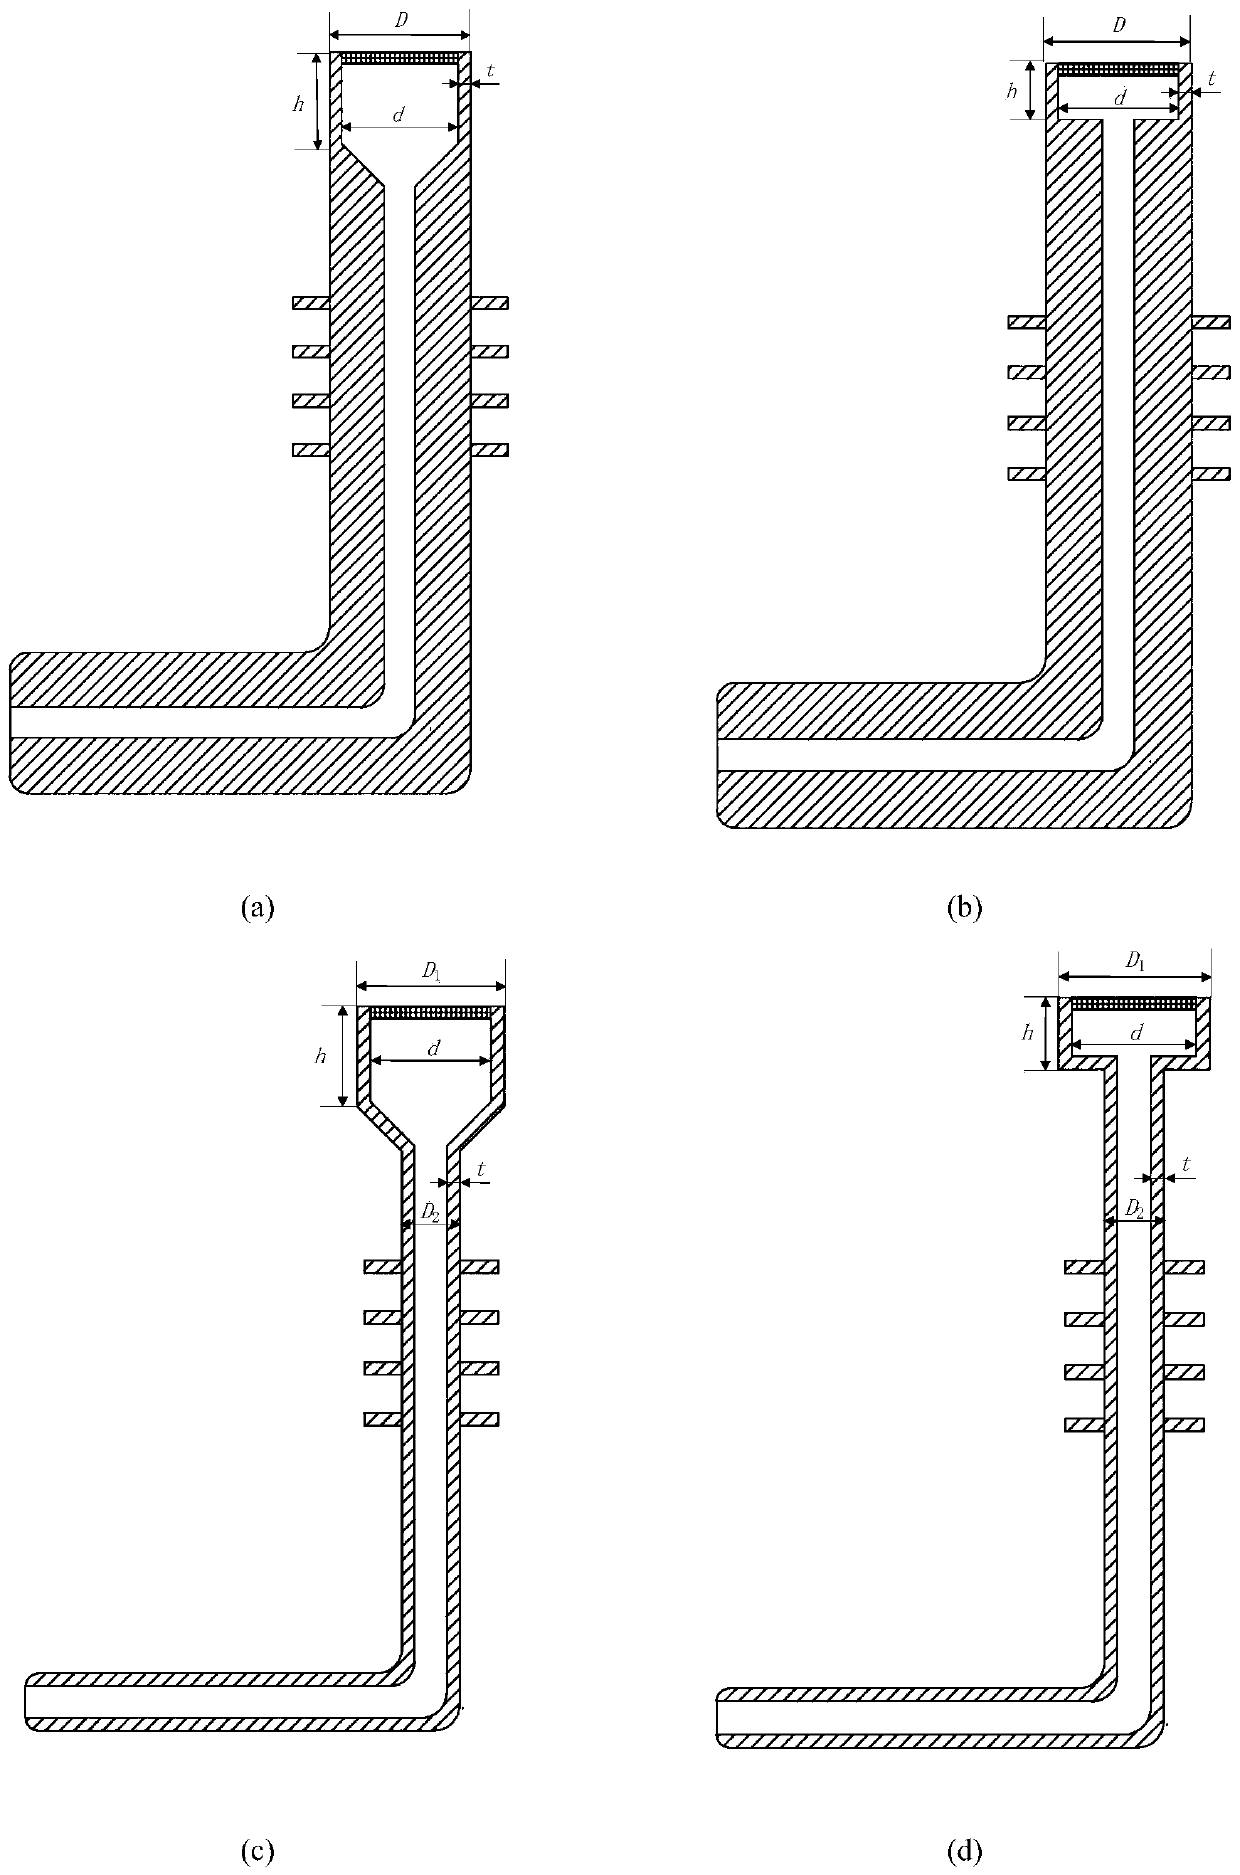 Pressure sensor system for compressor outlet pressure measurement